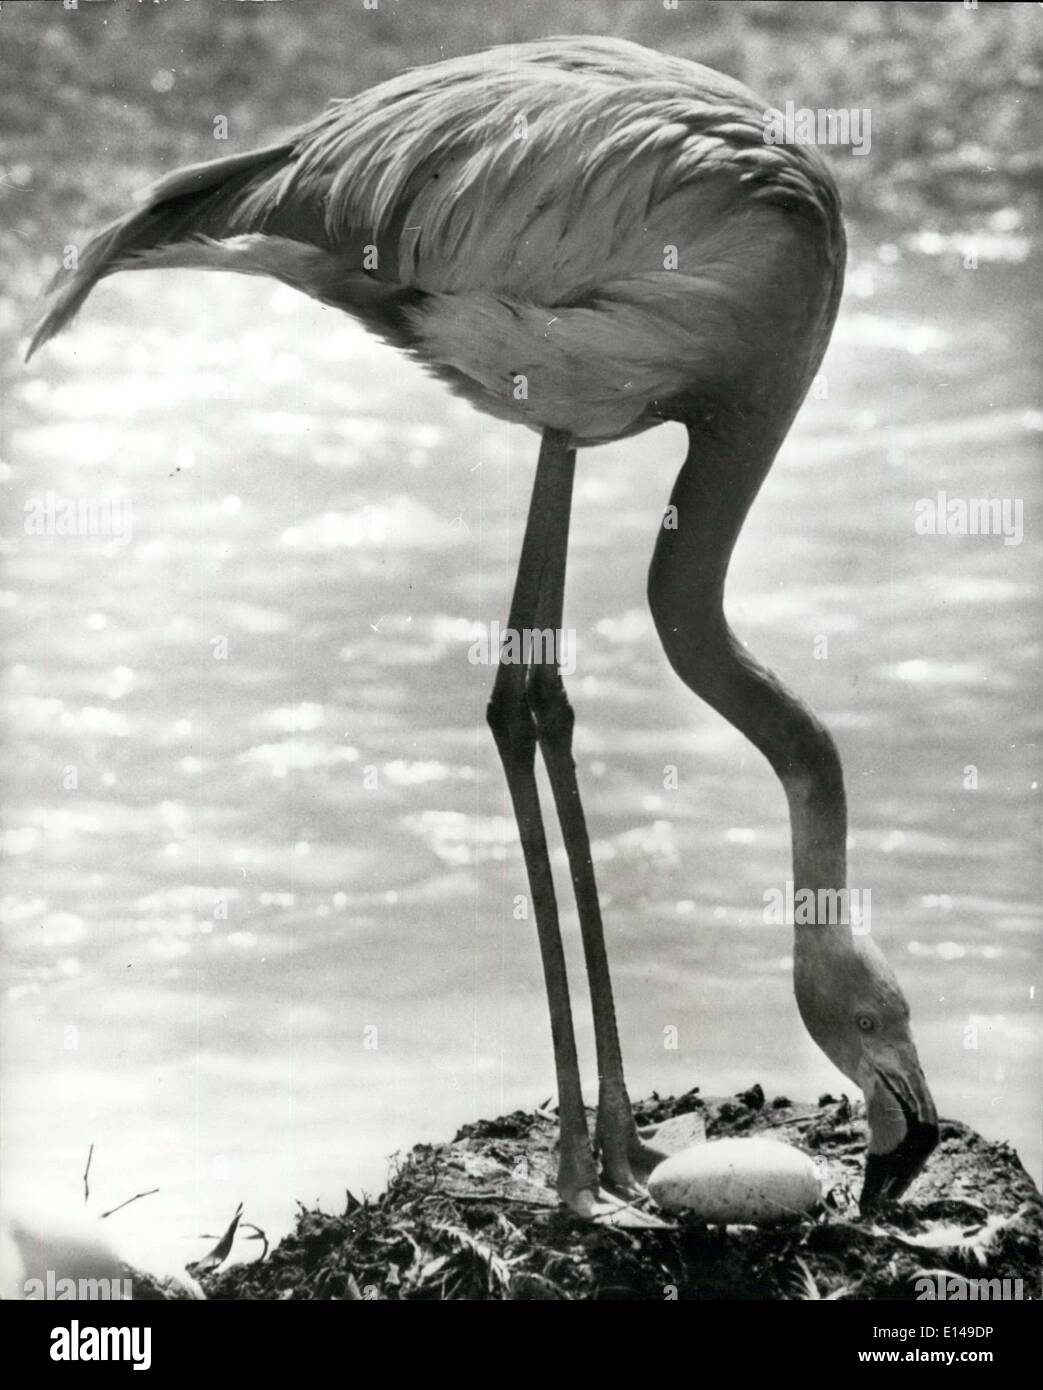 Apr. 17, 2012 - ''Did i laici che?'': un flamingo guarda giù da arrestare la sua nobile palafitte per esaminare il suo nuovo di cui uovo come se ad esclamare, ''Did i laici che?'' non è piccola meraviglia per gli uomini che un tale grande creatura può evolvere da una tale piccola shell.L'uccello è uno di una colonia presso la famosa San Deago Zoo in California. Foto Stock